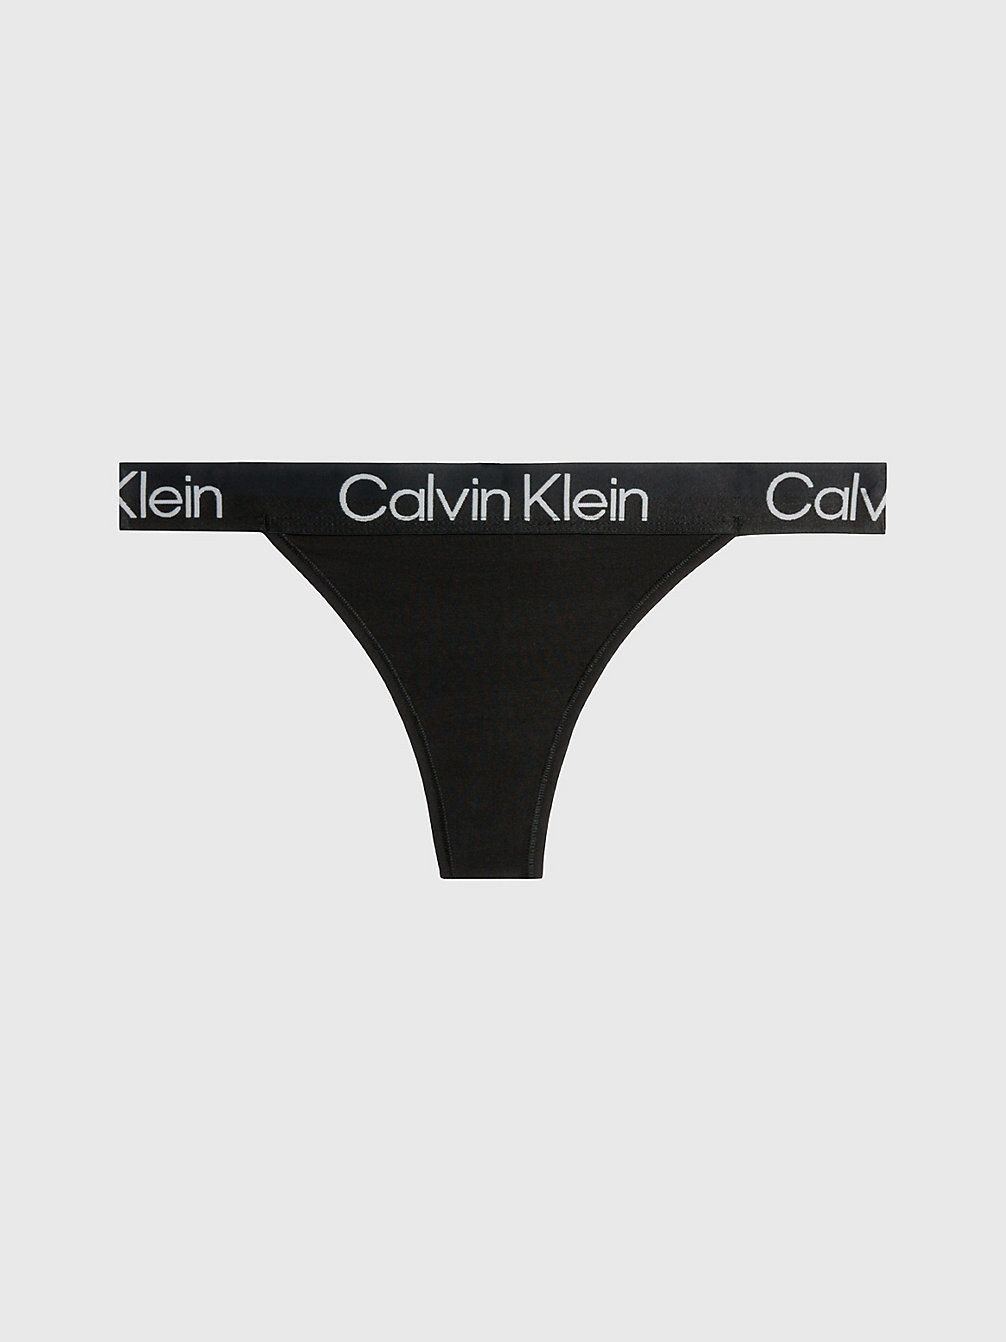 BLACK > String - Modern Structure > undefined Damen - Calvin Klein